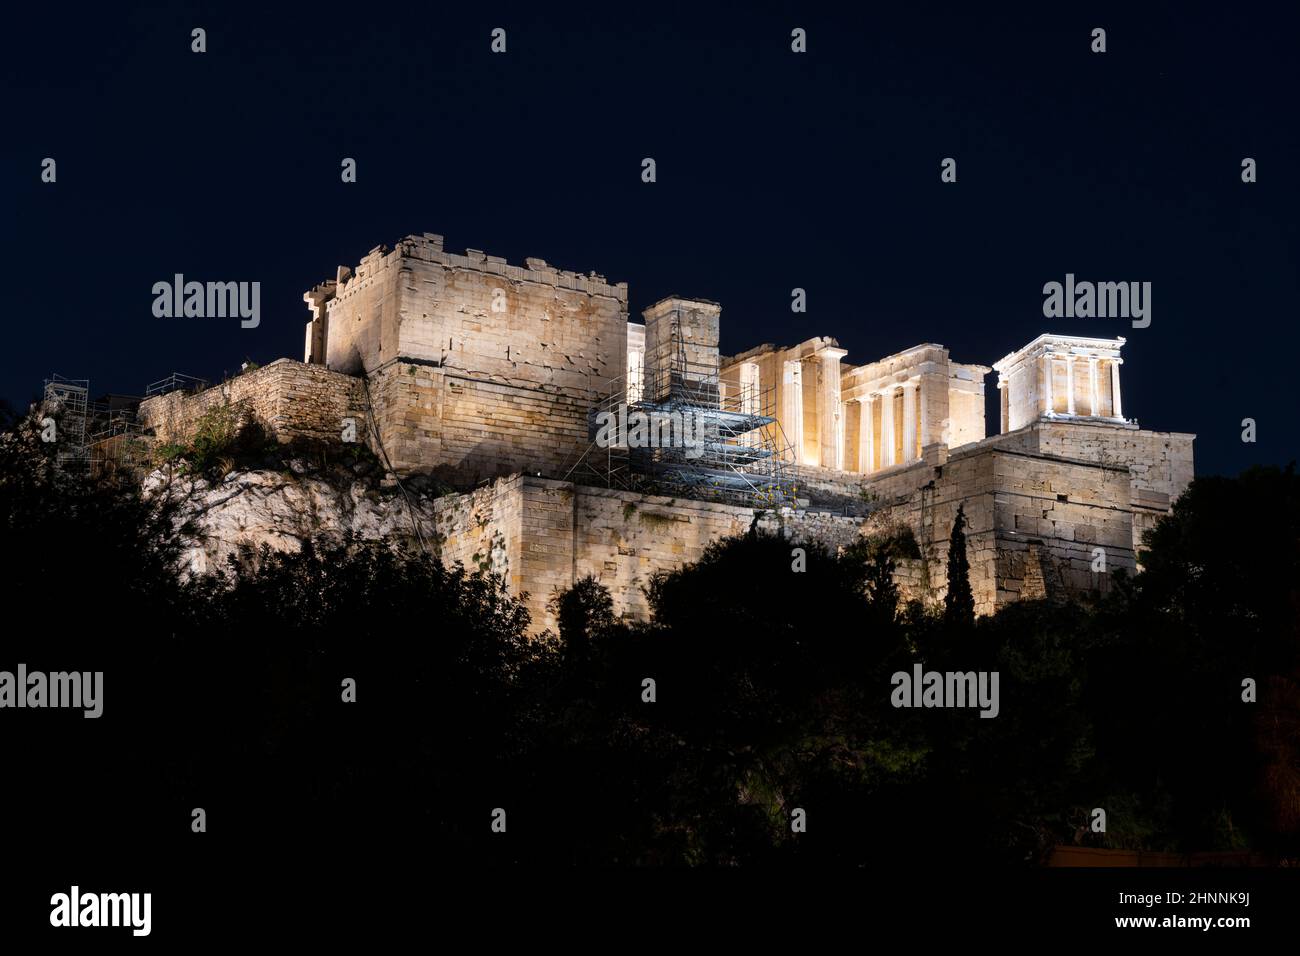 La colina de la Acrópolis en Atenas, Grecia Foto de stock